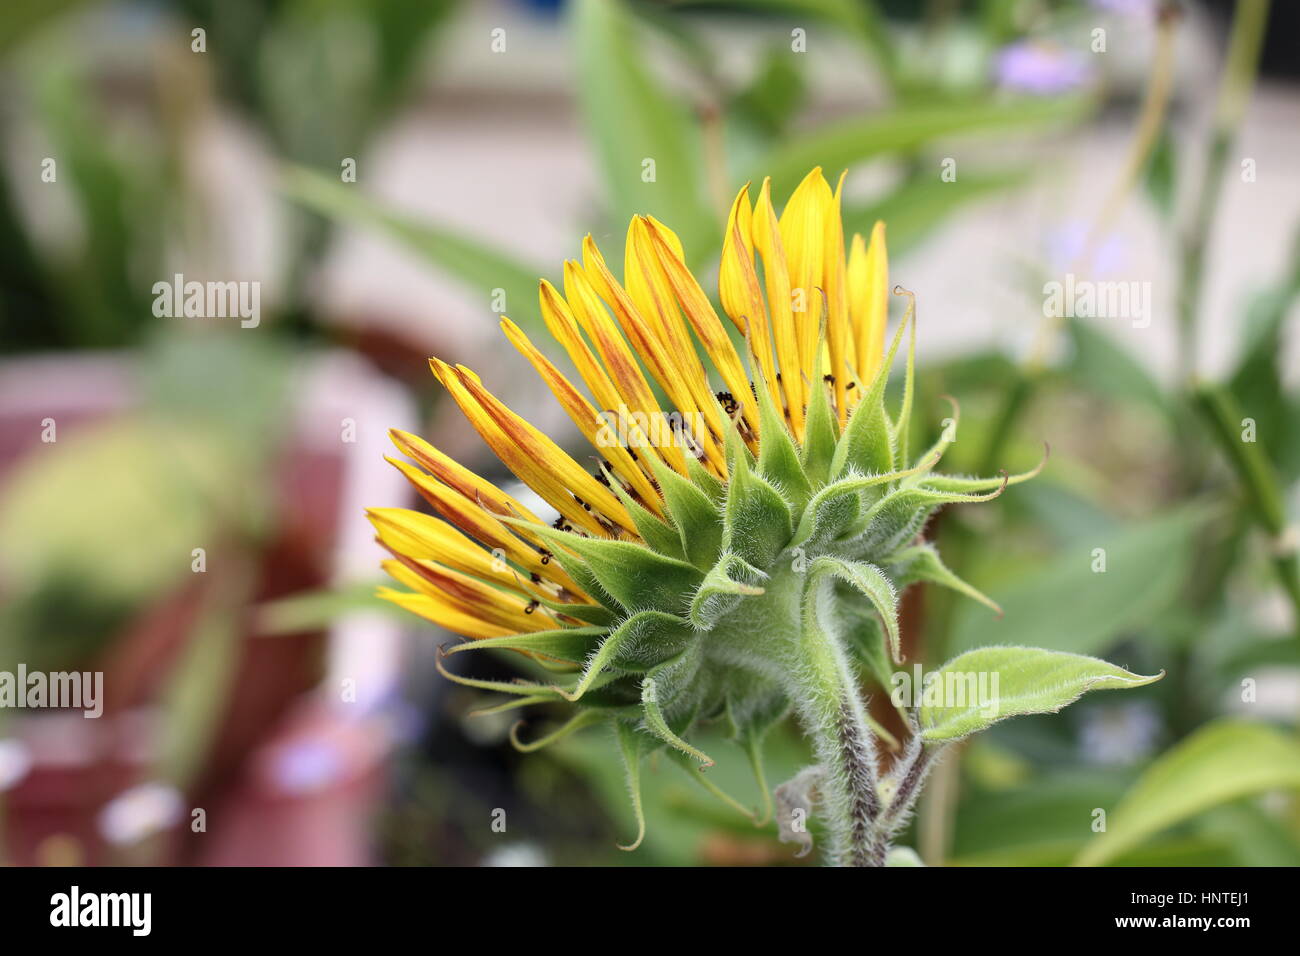 Blooming Royal Velvet sunflower  - back view Stock Photo